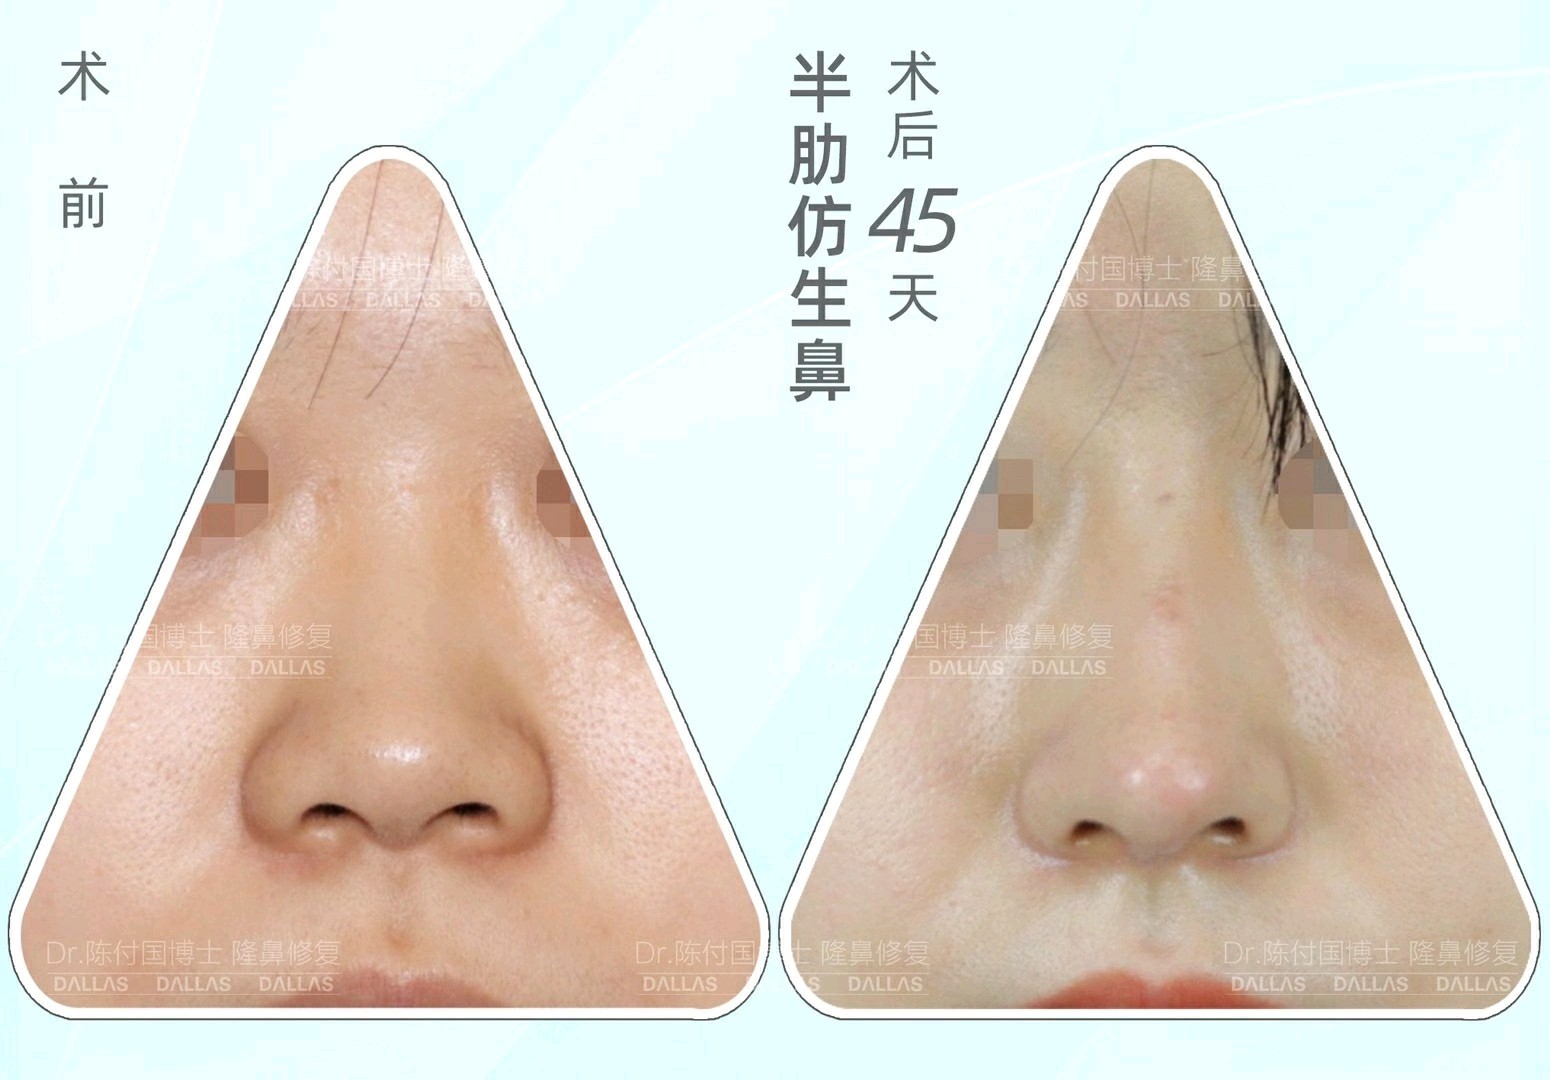 术前典型的鞍鼻&短鼻,侧面山根非常凹陷,凸嘴,鼻头